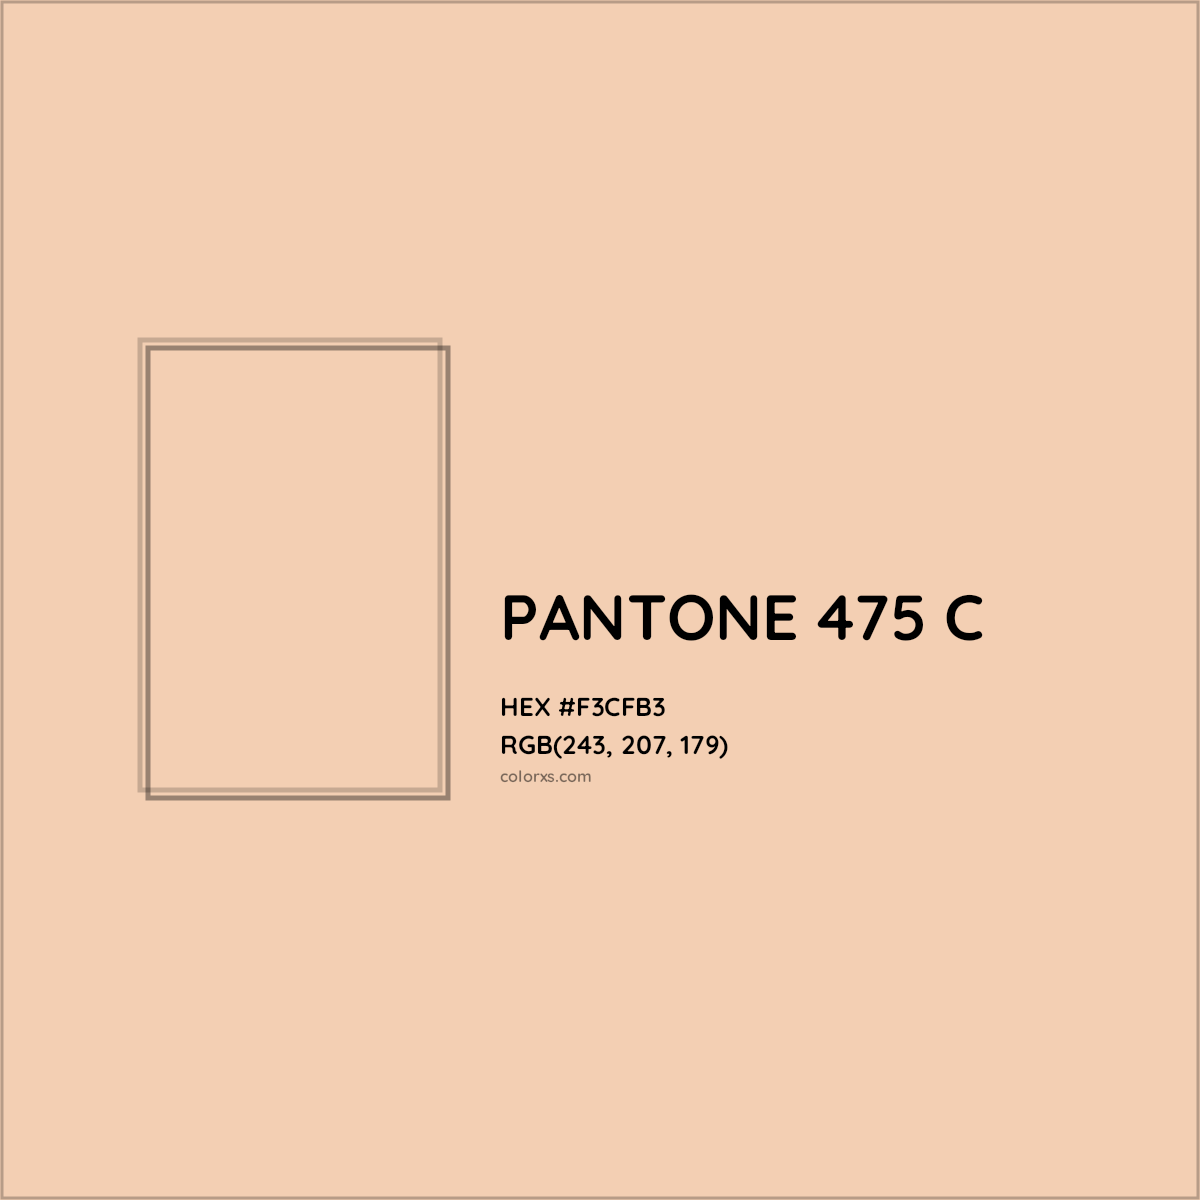 HEX #F3CFB3 PANTONE 475 C CMS Pantone PMS - Color Code